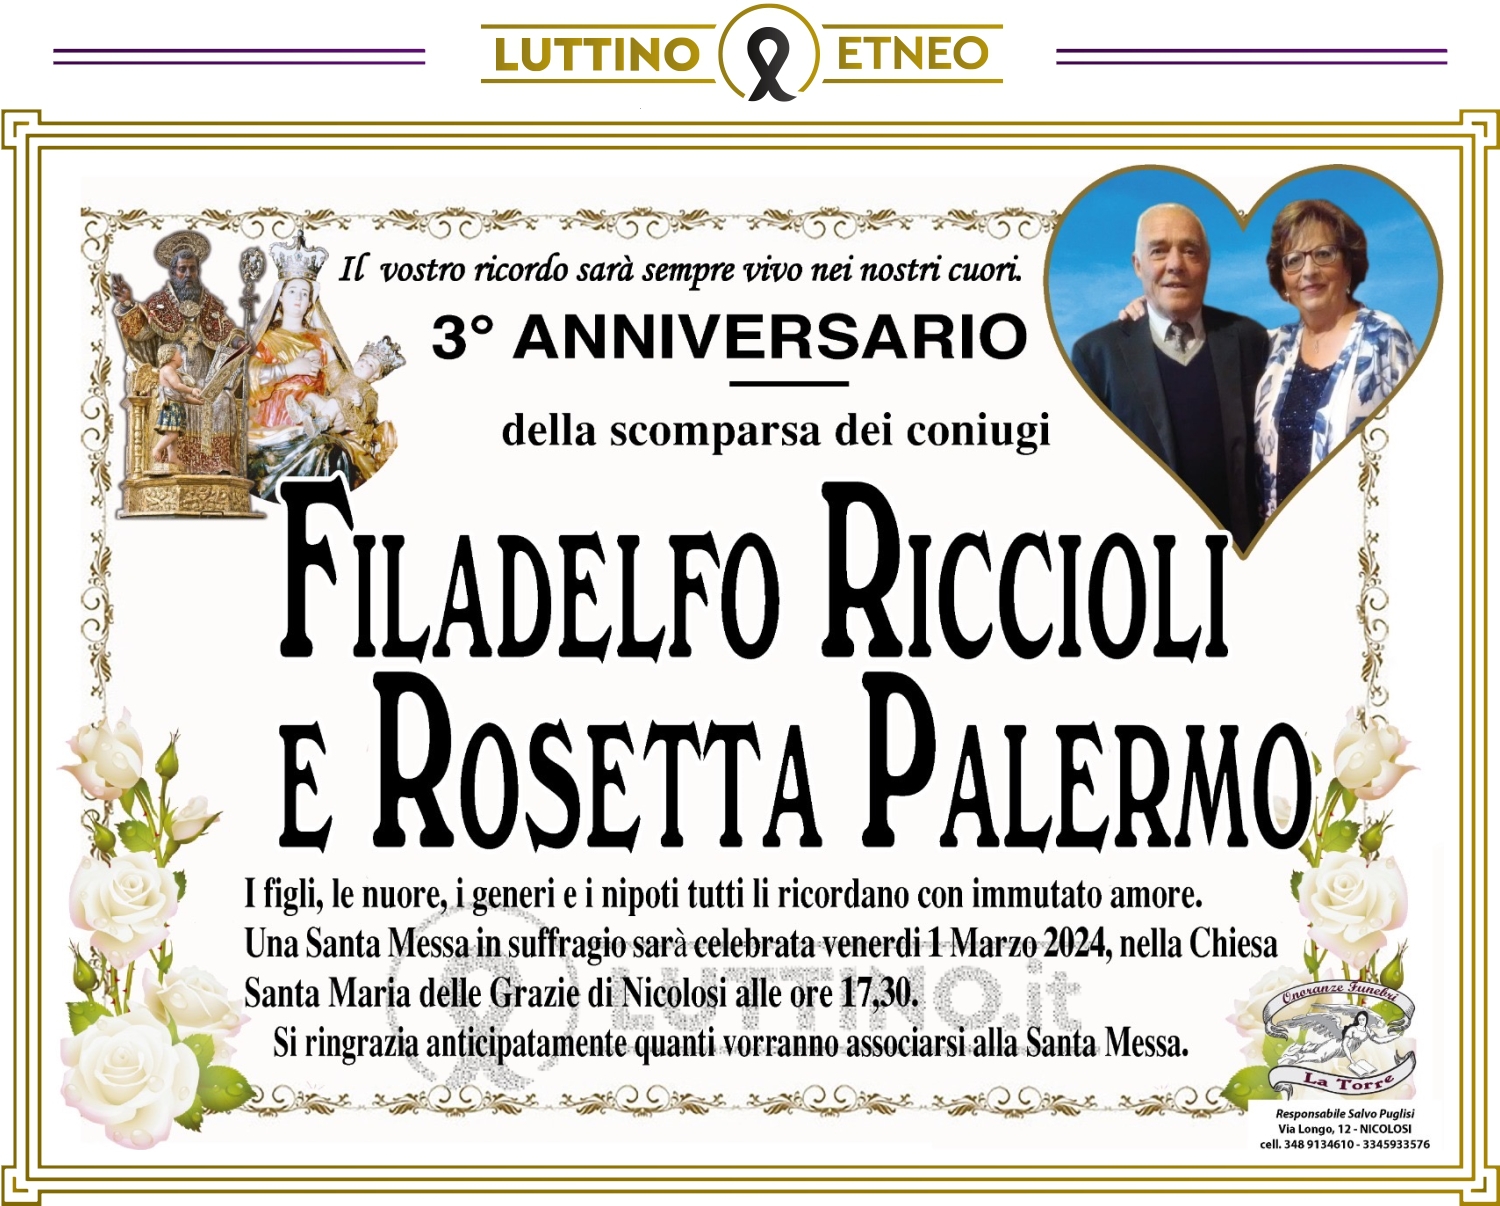 Rosetta Palermo e Filadelfo Riccioli 